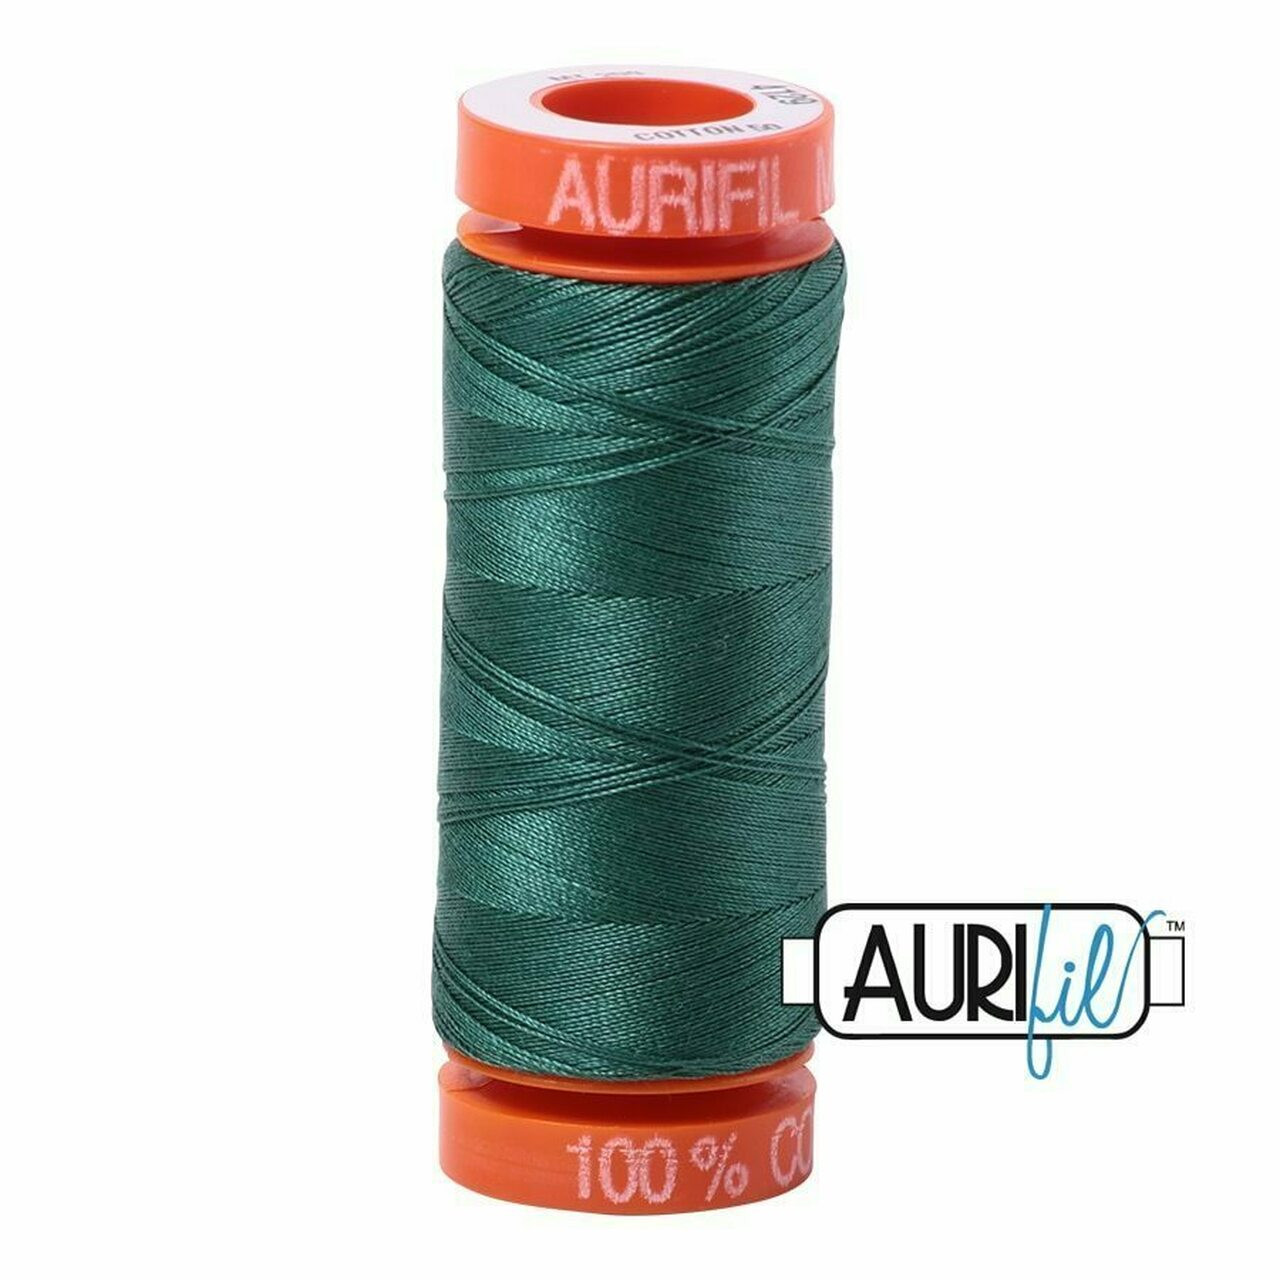 Aurifil 4129 - Turf Green